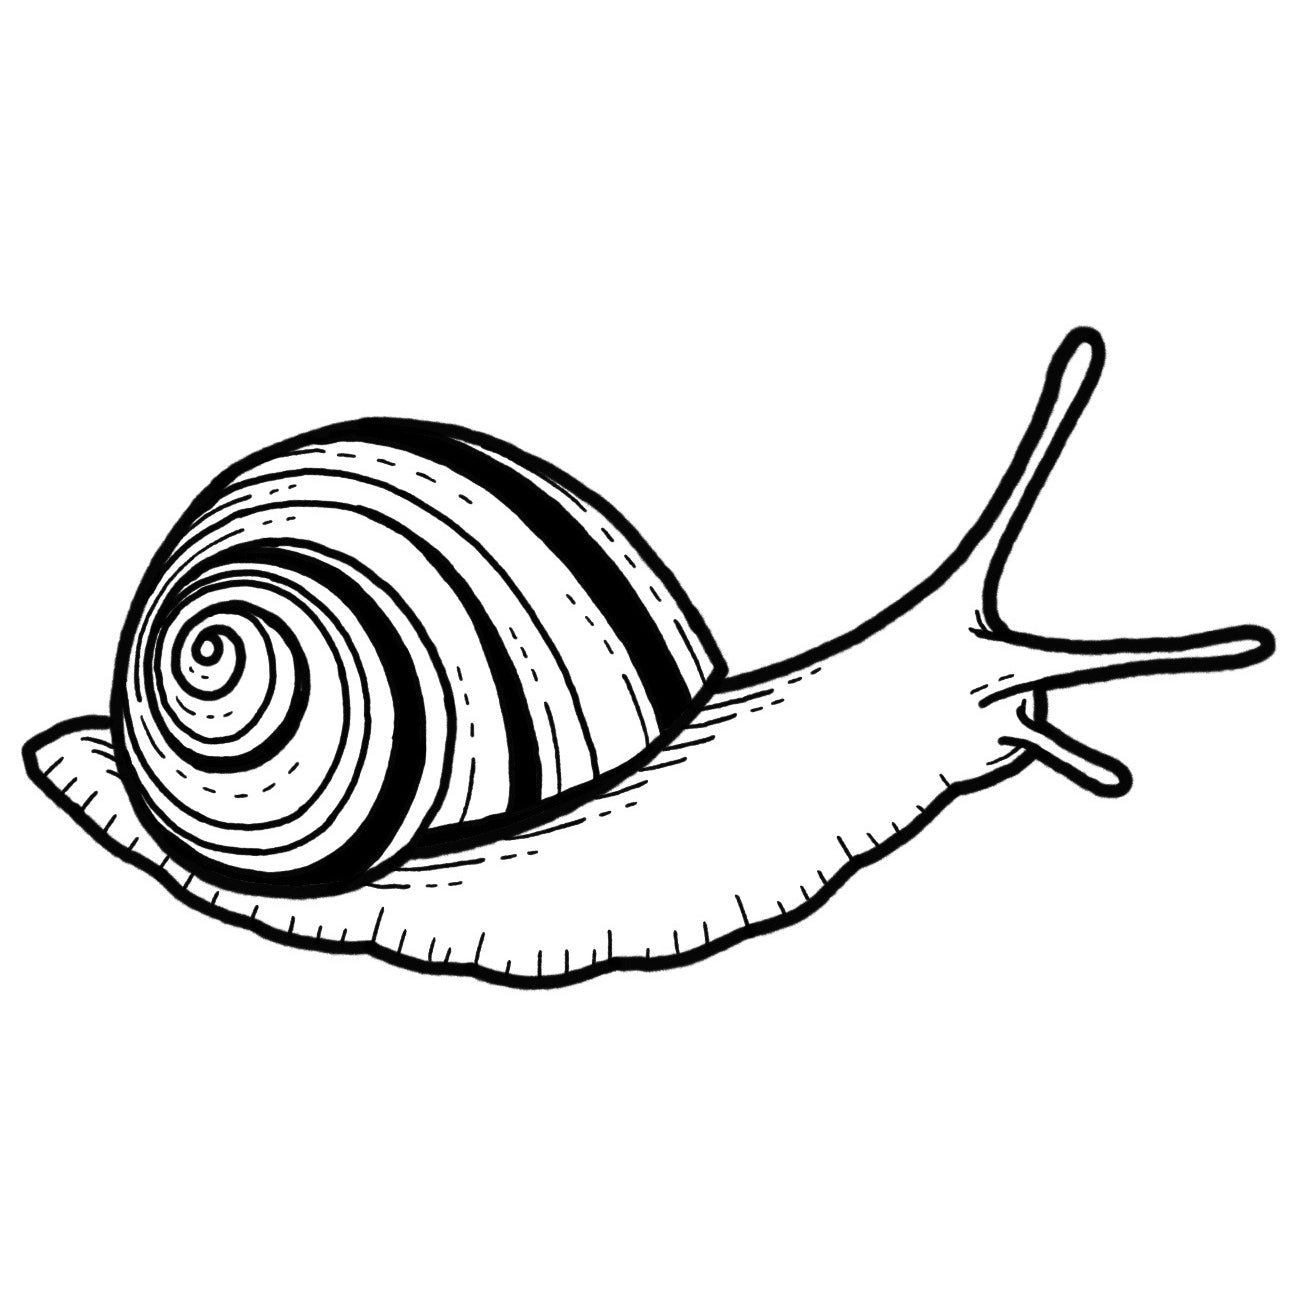 Snail - Blackwork